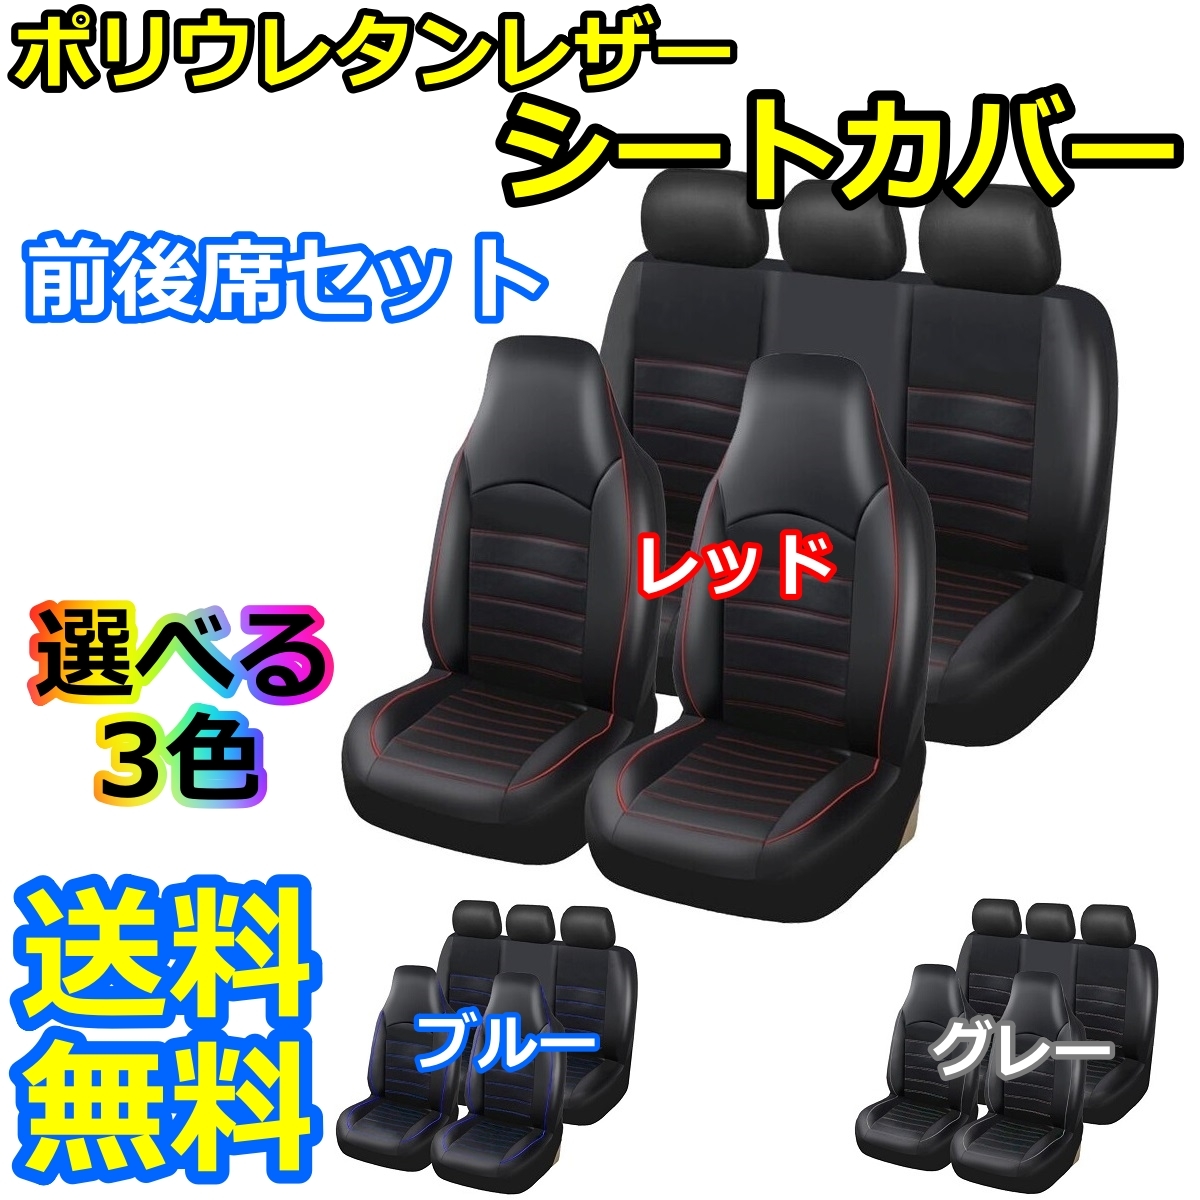 シートカバー レクサス LX NX RC RX UX LS SC ポリウレタンレザー 前席セット 被せるだけ 選べる3色 AUTOYOUTH_画像1